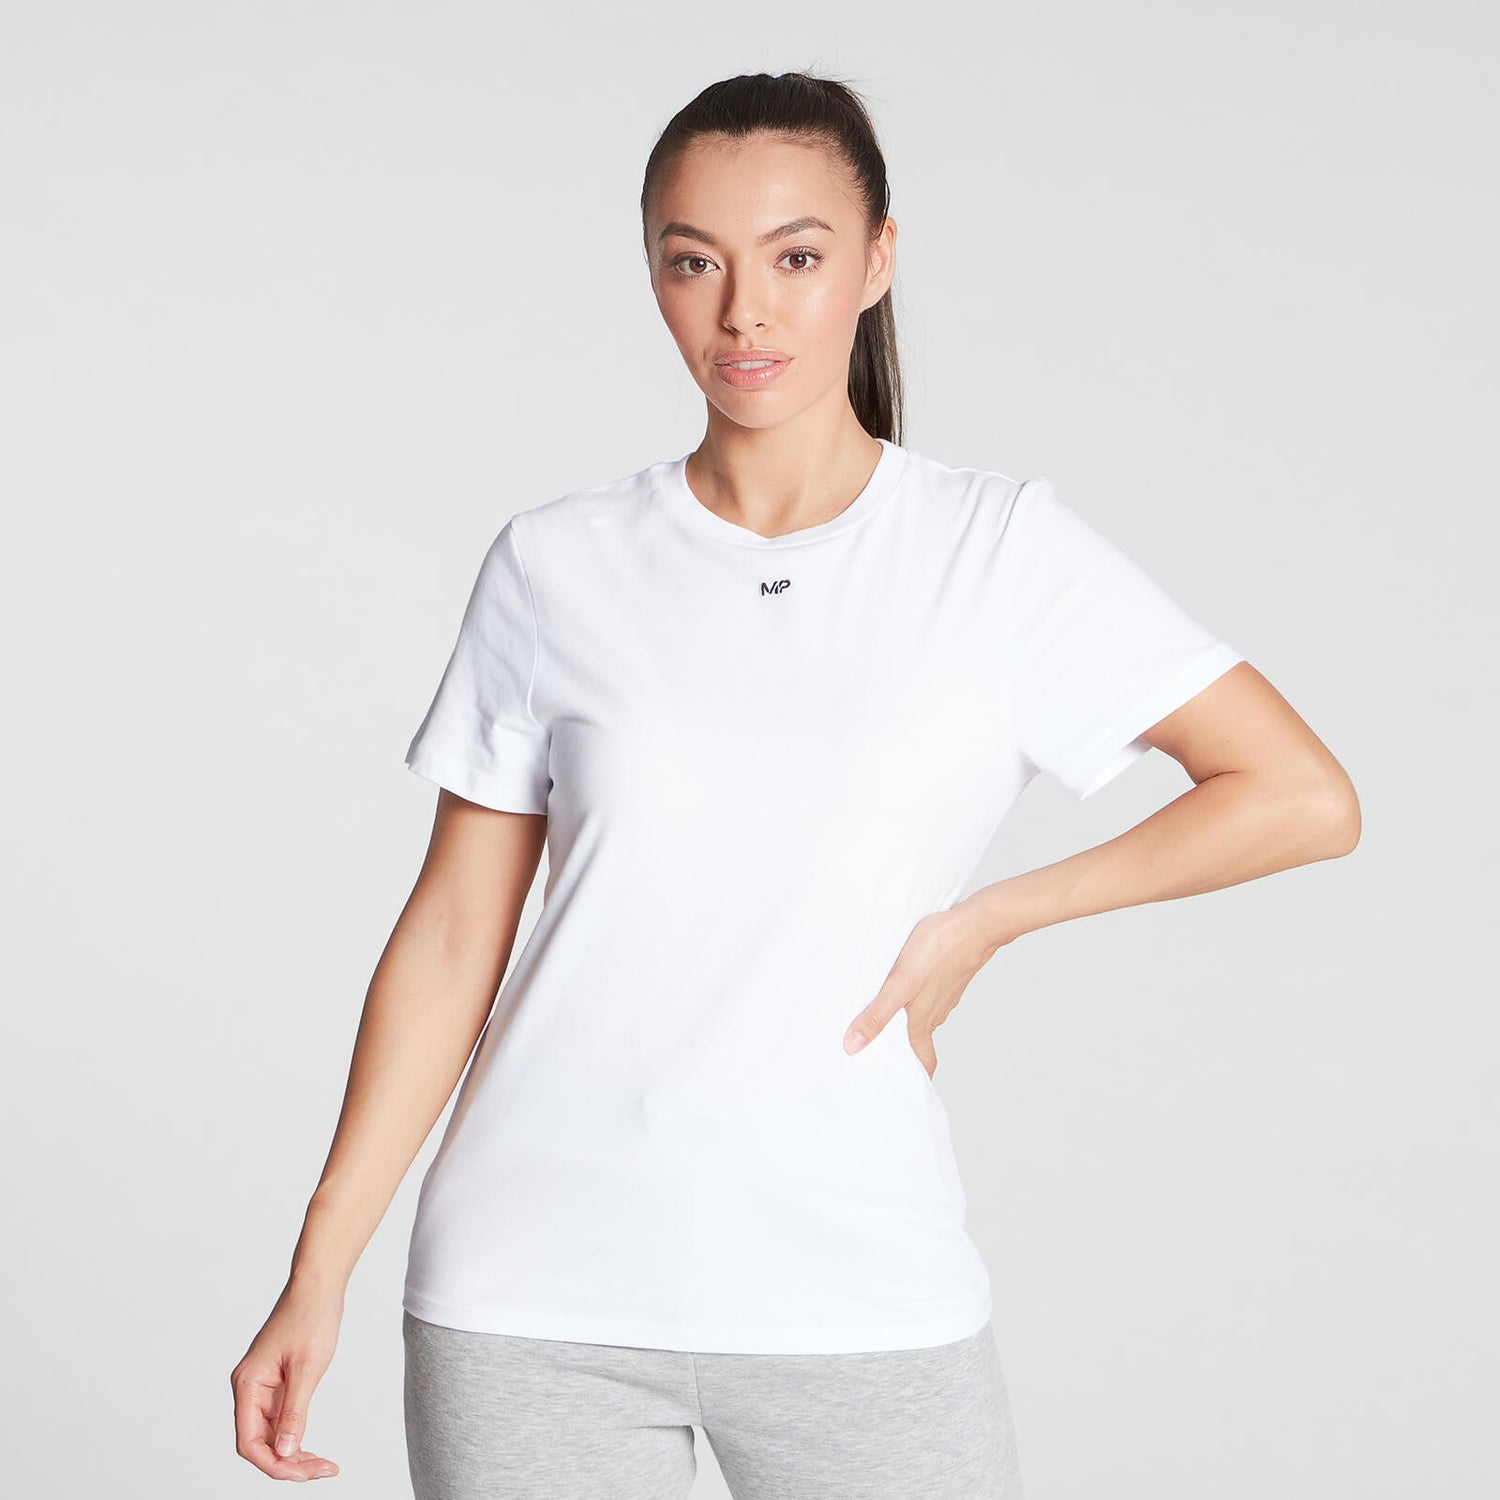 여성용 에센셜 티셔츠 - 화이트 - XS